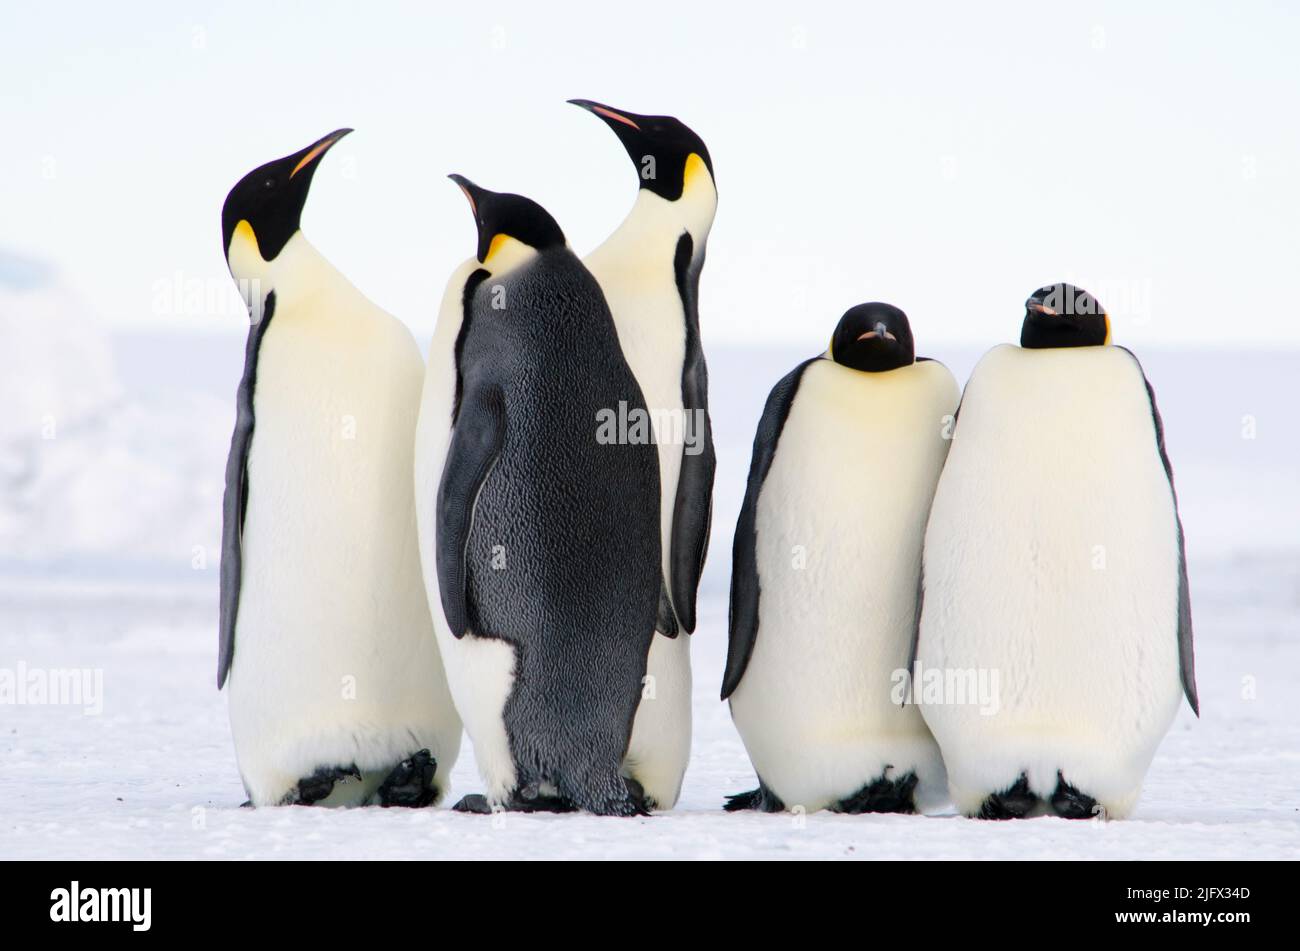 Pinguini imperatore, il più grande di tutte le specie viventi di pinguini, sono catturati in questa foto vicino a Erebus Bay, Antartide. Il pinguino imperatore (Appenodytes forsteri) è il più alto e pesante di tutte le specie viventi di pinguini ed è endemico dell'Antartide. Credit: W.link/USGS (autorizzazione immagine n. 1032-1917) Foto Stock